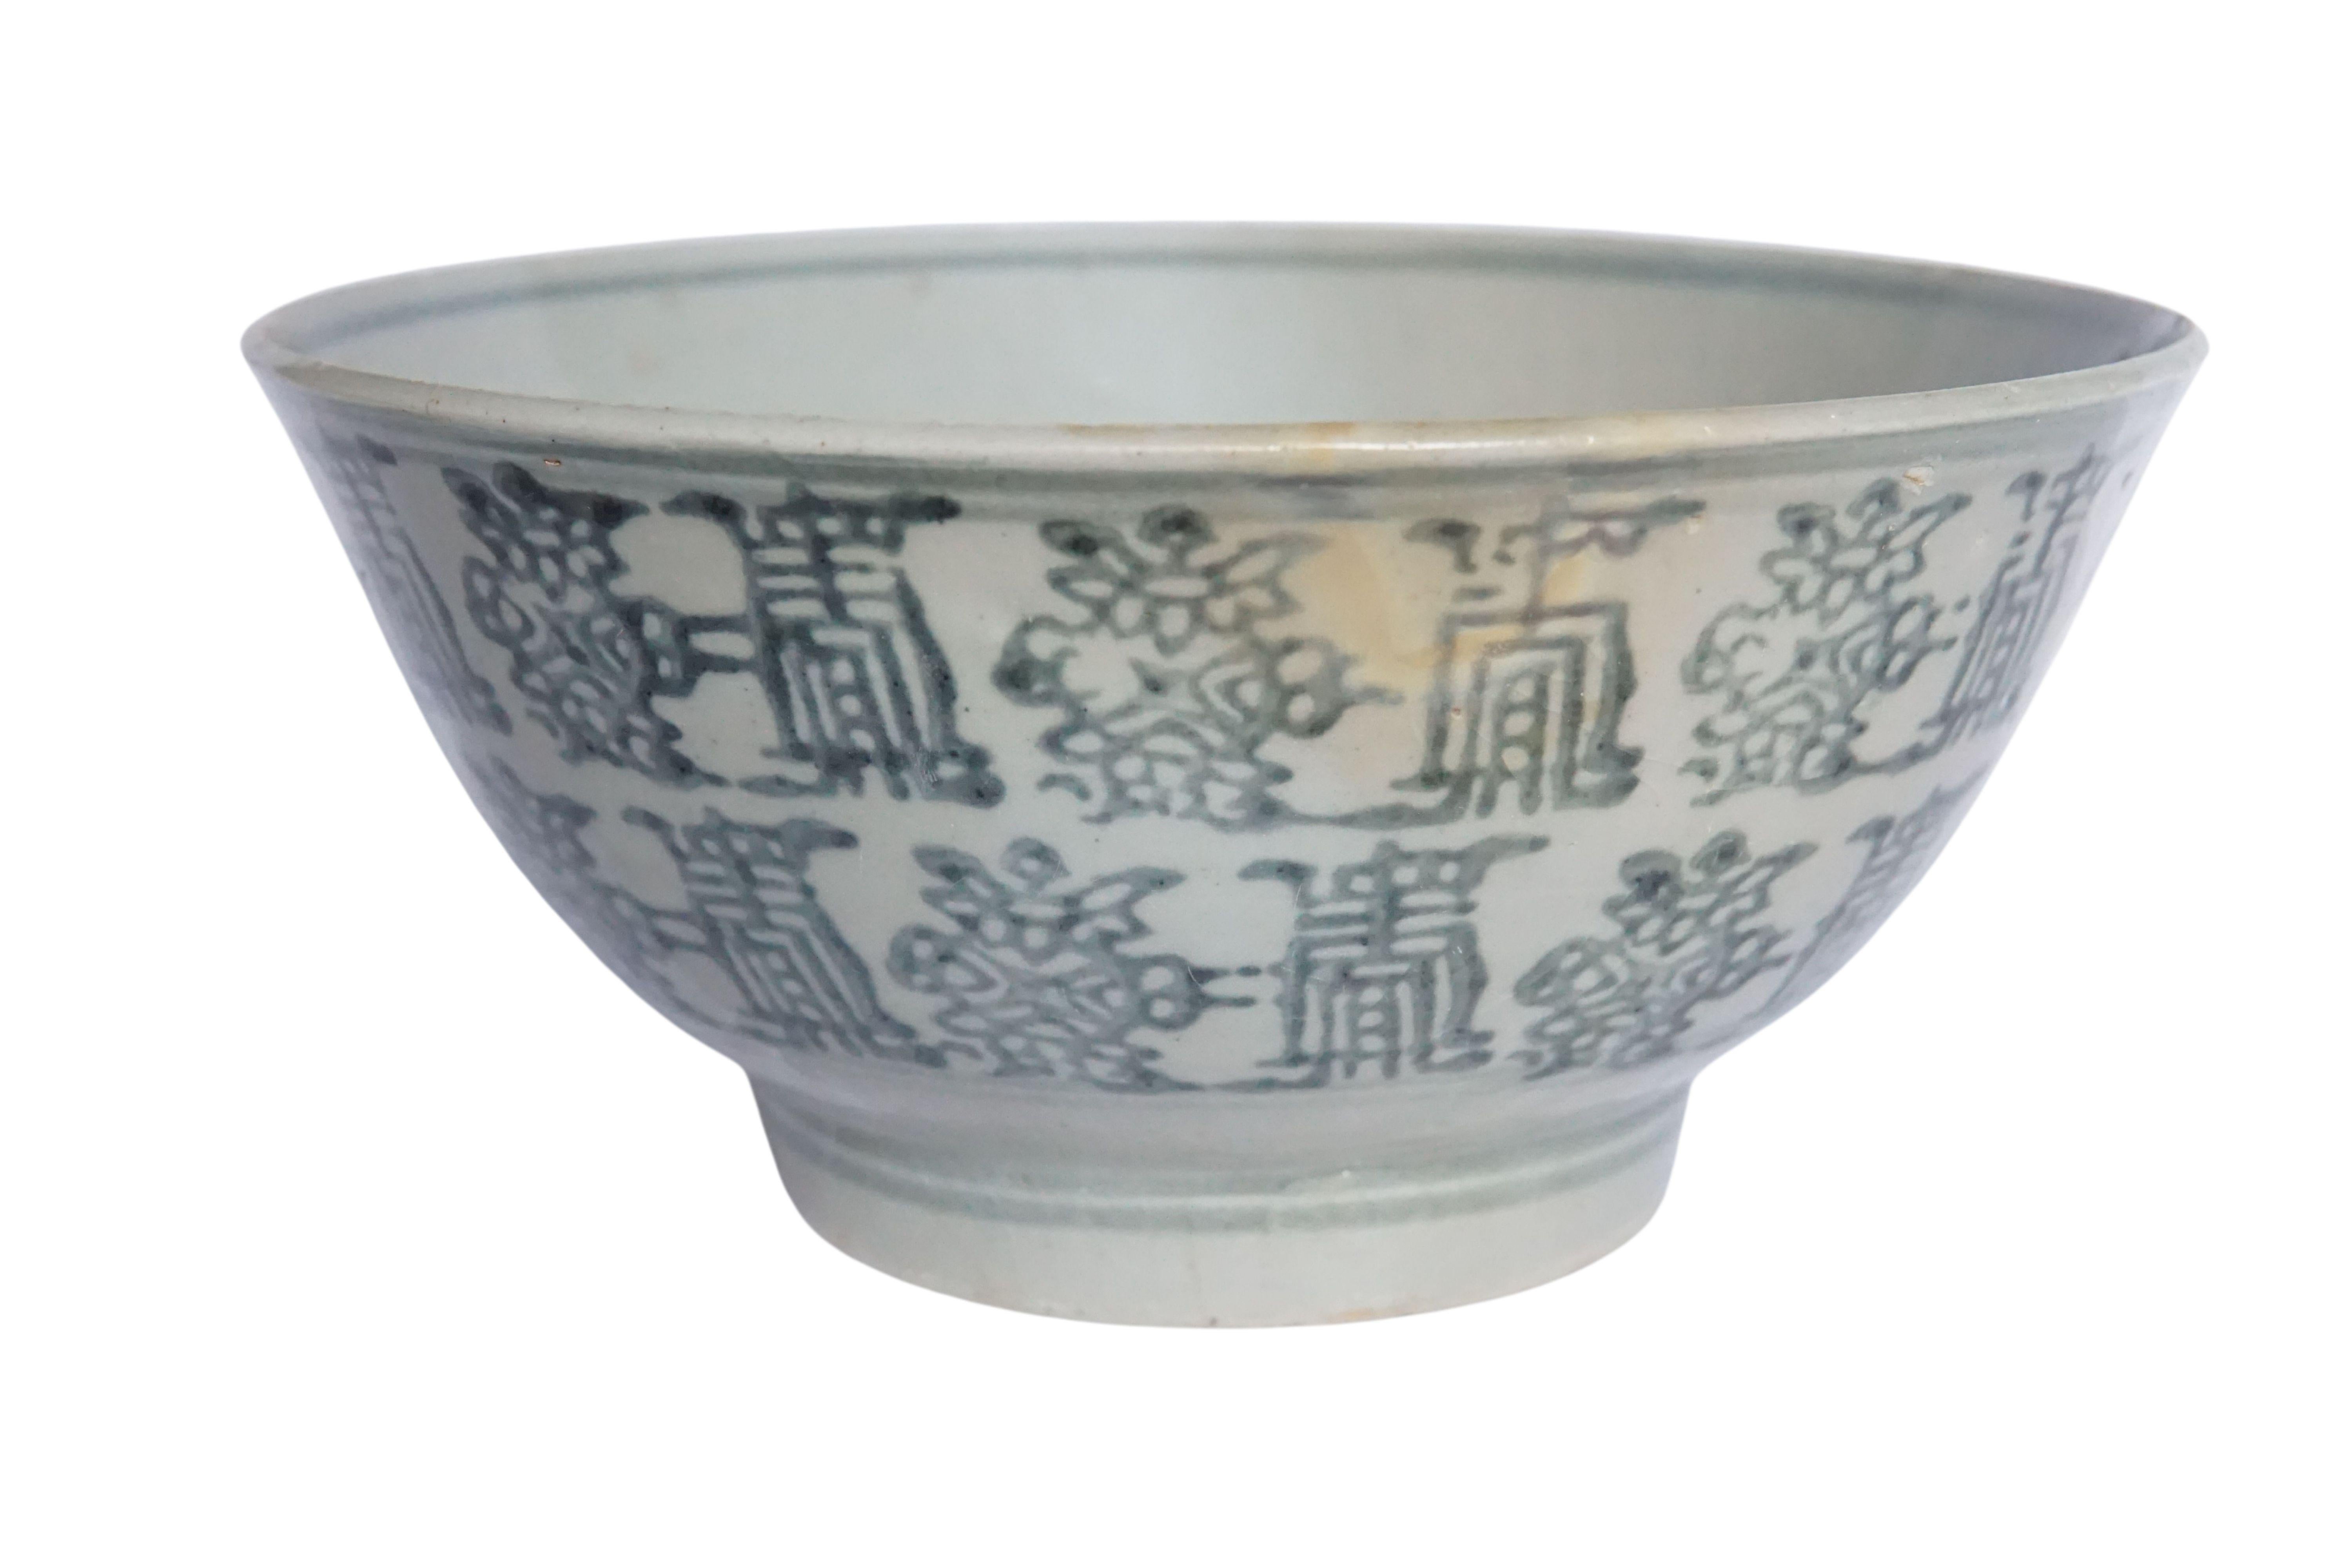 Diese chinesische Keramikschale aus der Qing-Dynastie wird von einer blau-grauen Glasur dominiert und weist wunderschöne handgemalte Symbole auf. Einst als alltägliche Schale verwendet, ist sie heute ein großartiges Beispiel für chinesische Keramik